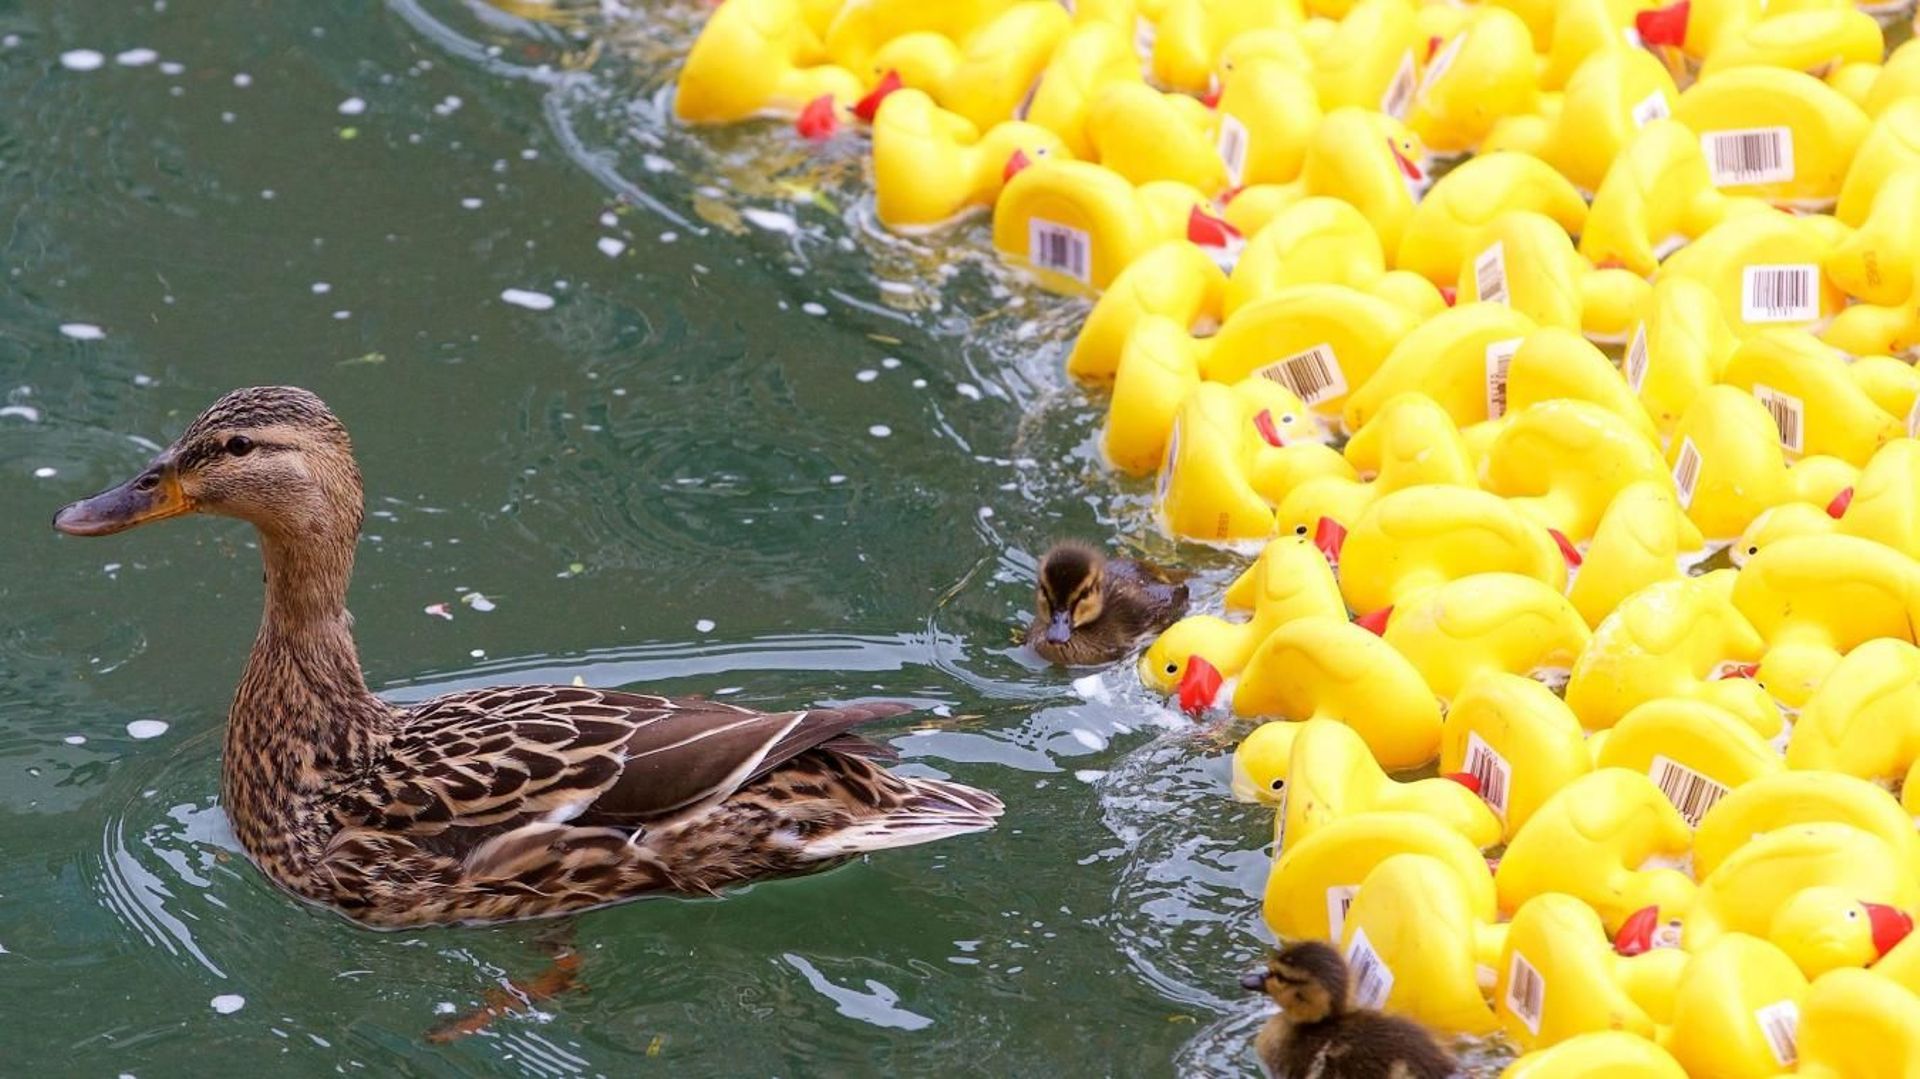 4eme-edition-des-ducks-day-12500-canards-en-plastique-seront-laches-dans-la-derivation-a-la-boverie-pour-une-bonne-cause